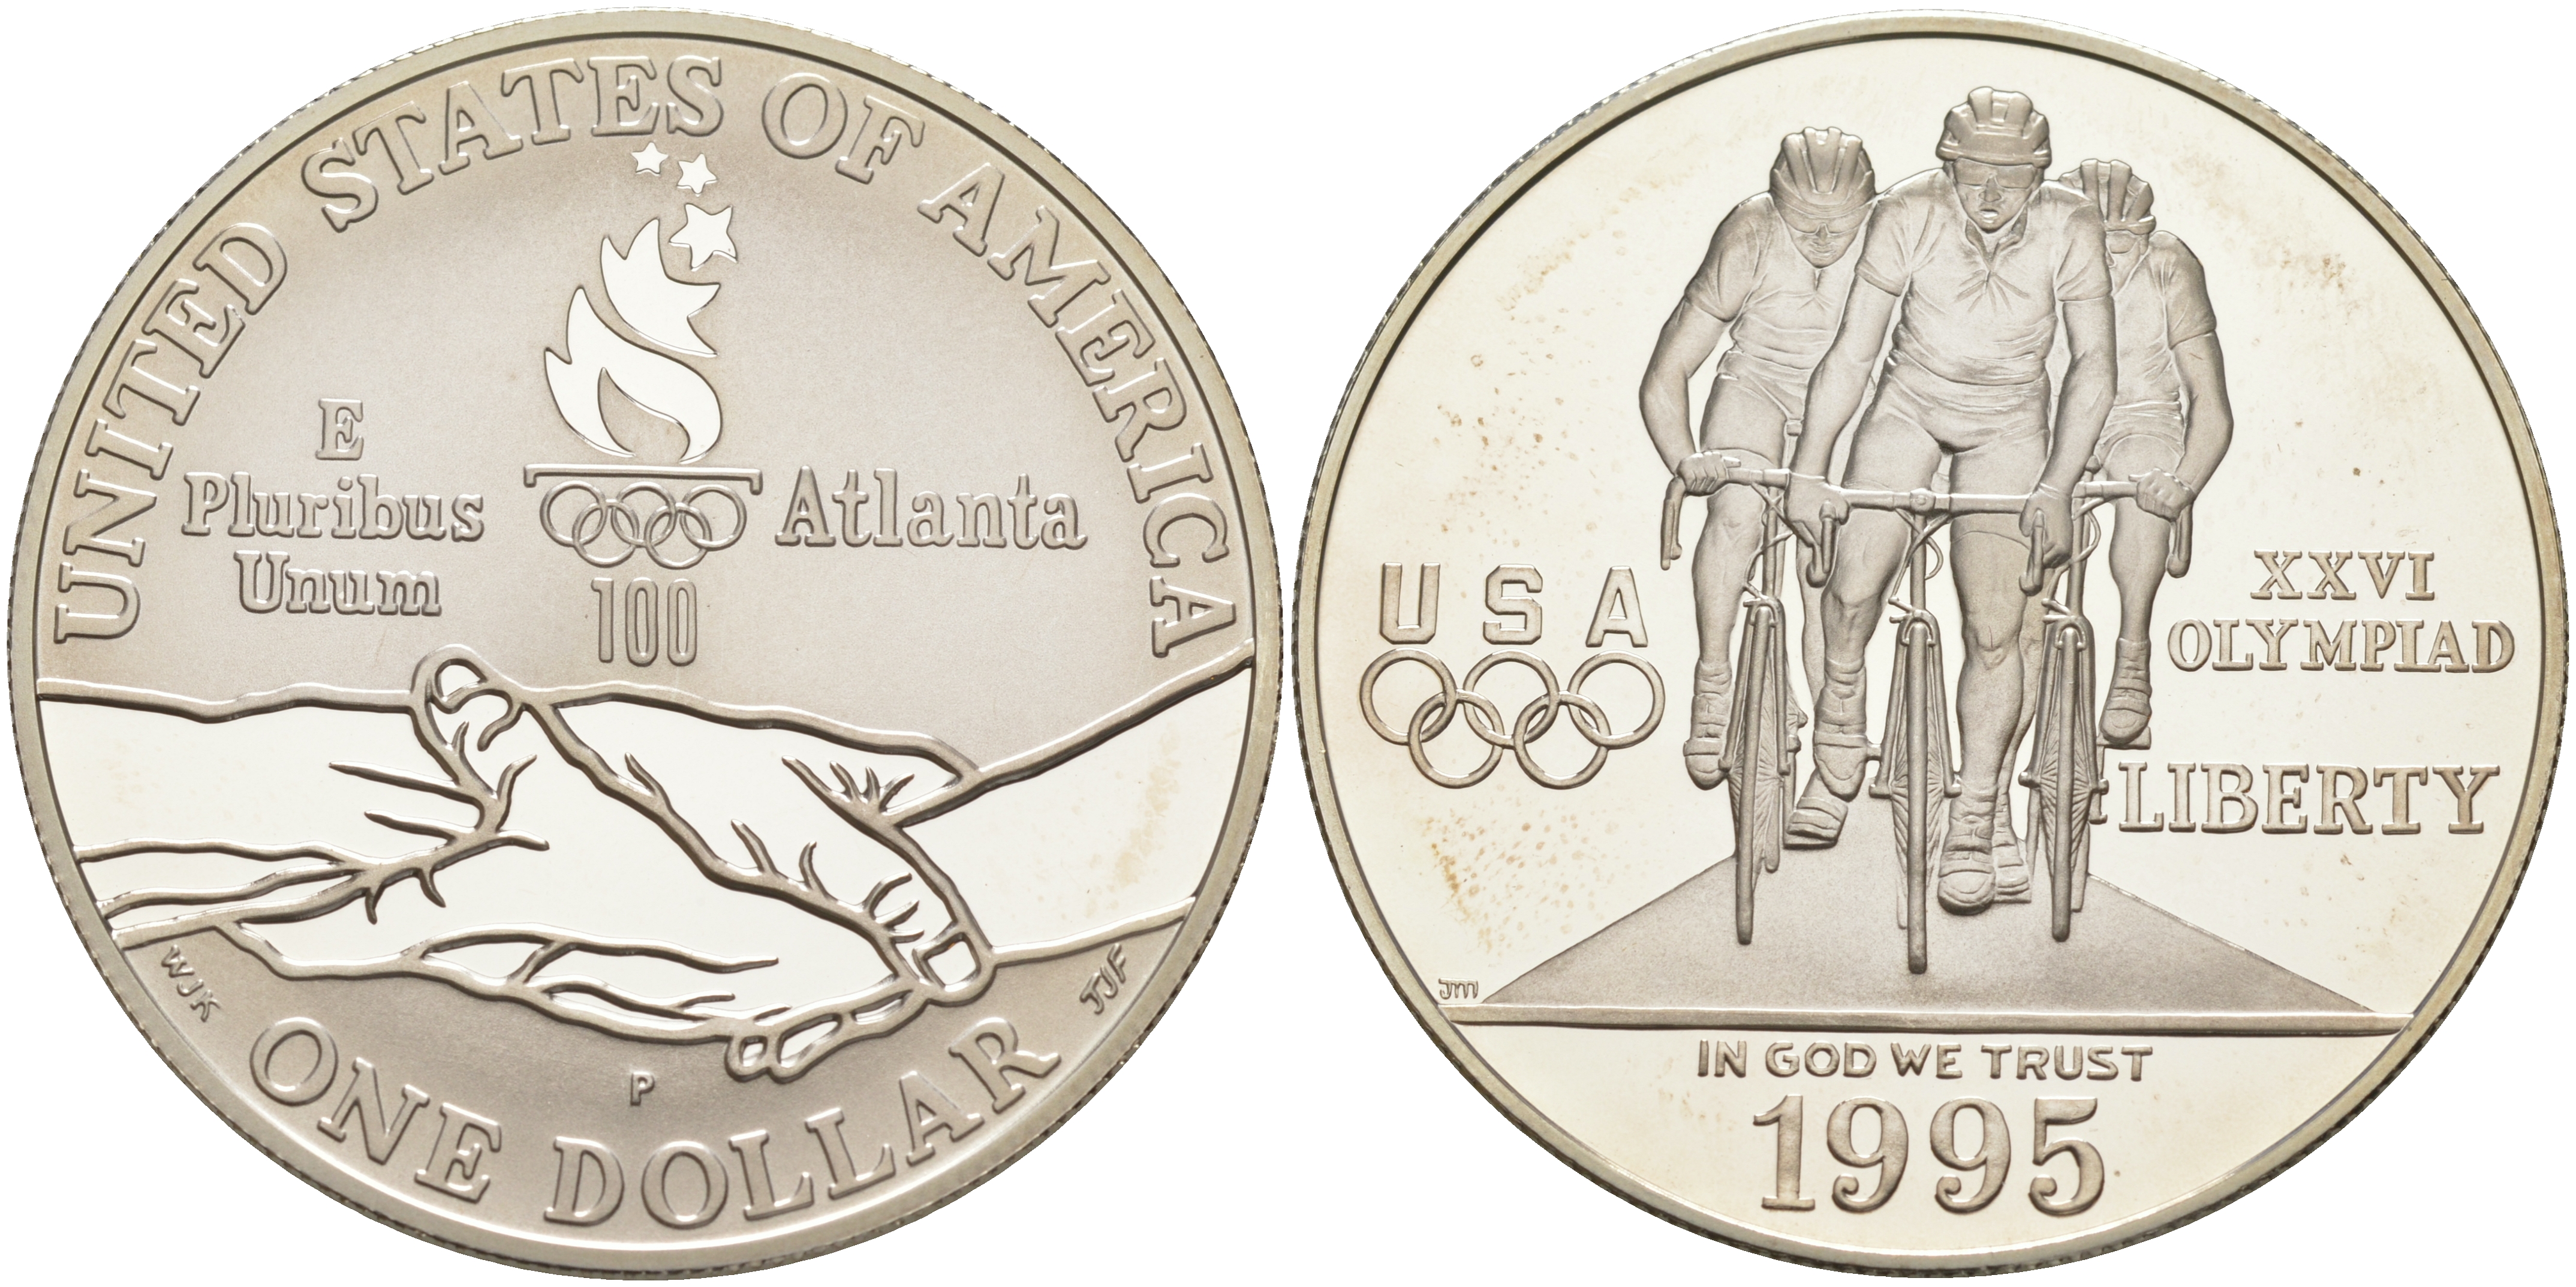 Аукцион сша с доставкой в россию. 1 Доллар США 1995. Доллар серебро США Атланта 1995. Олимпийские золотые монеты Америки 1995 год. США 1 доллар 1995 серебро.